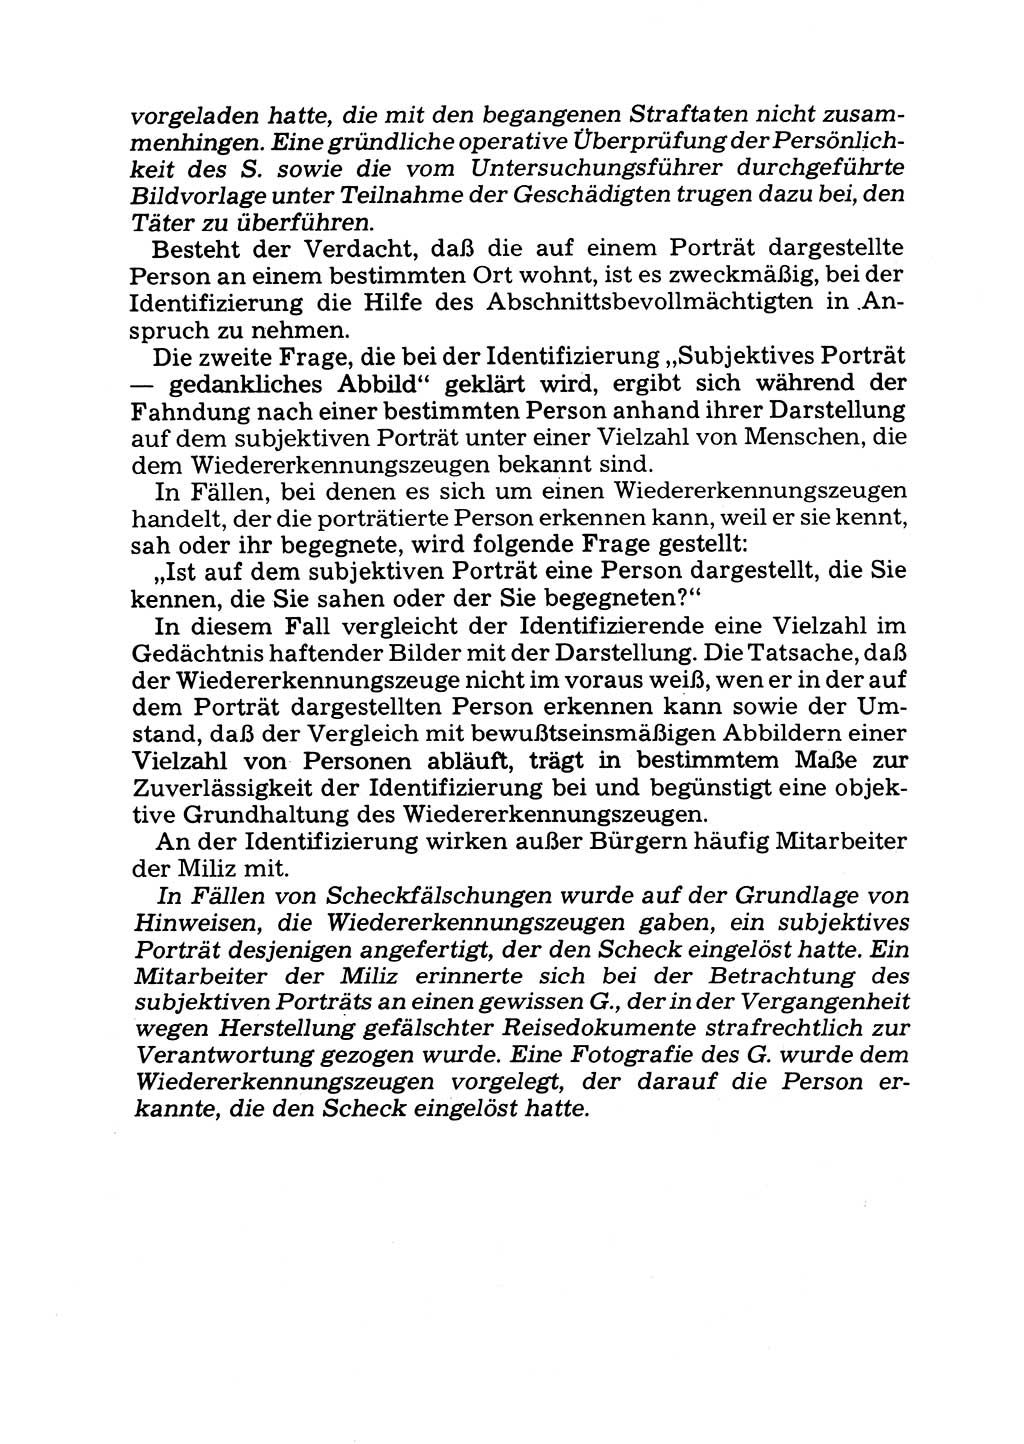 Das subjektive Porträt [Deutsche Demokratische Republik (DDR)] 1981, Seite 167 (Subj. Port. DDR 1981, S. 167)